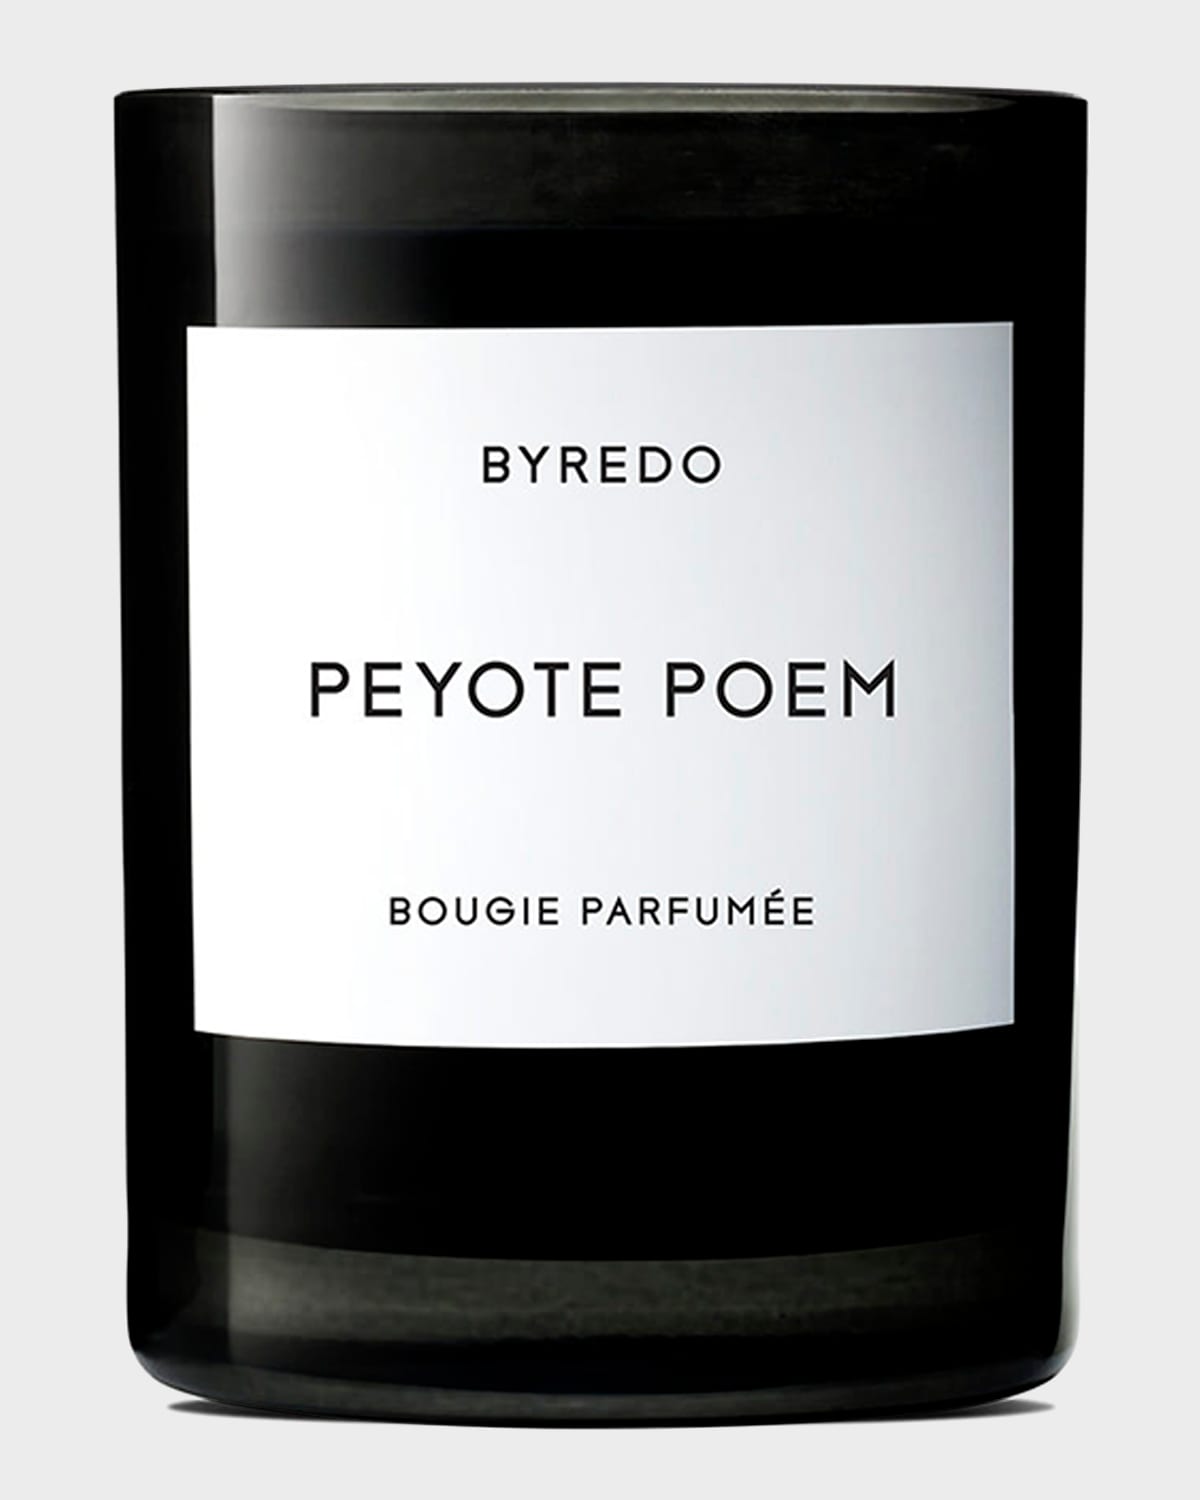 Byredo 8.5 Oz. Peyote Poem Bougie Parfumee Scented Candle